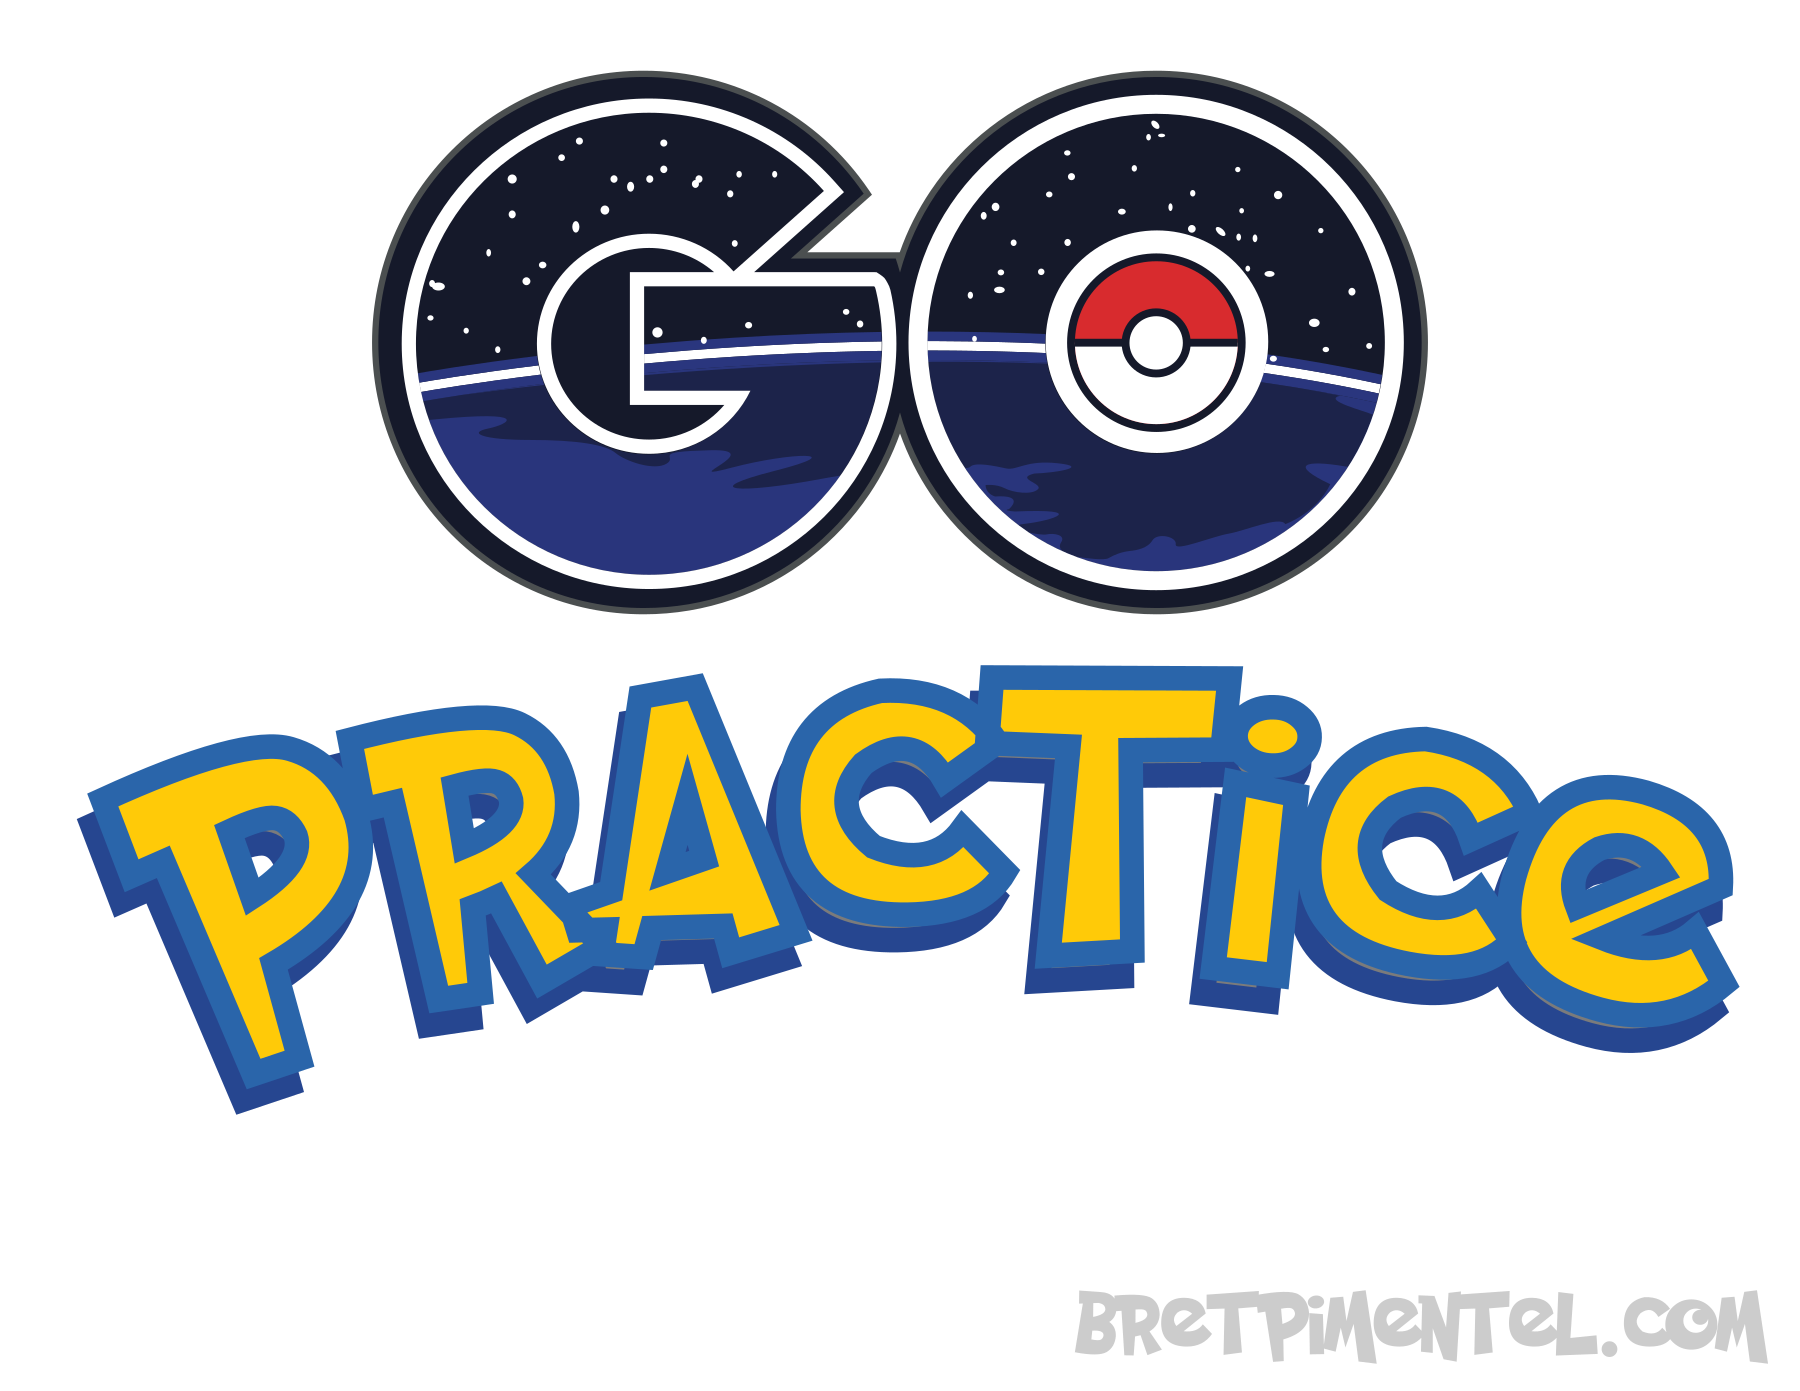 go-practice